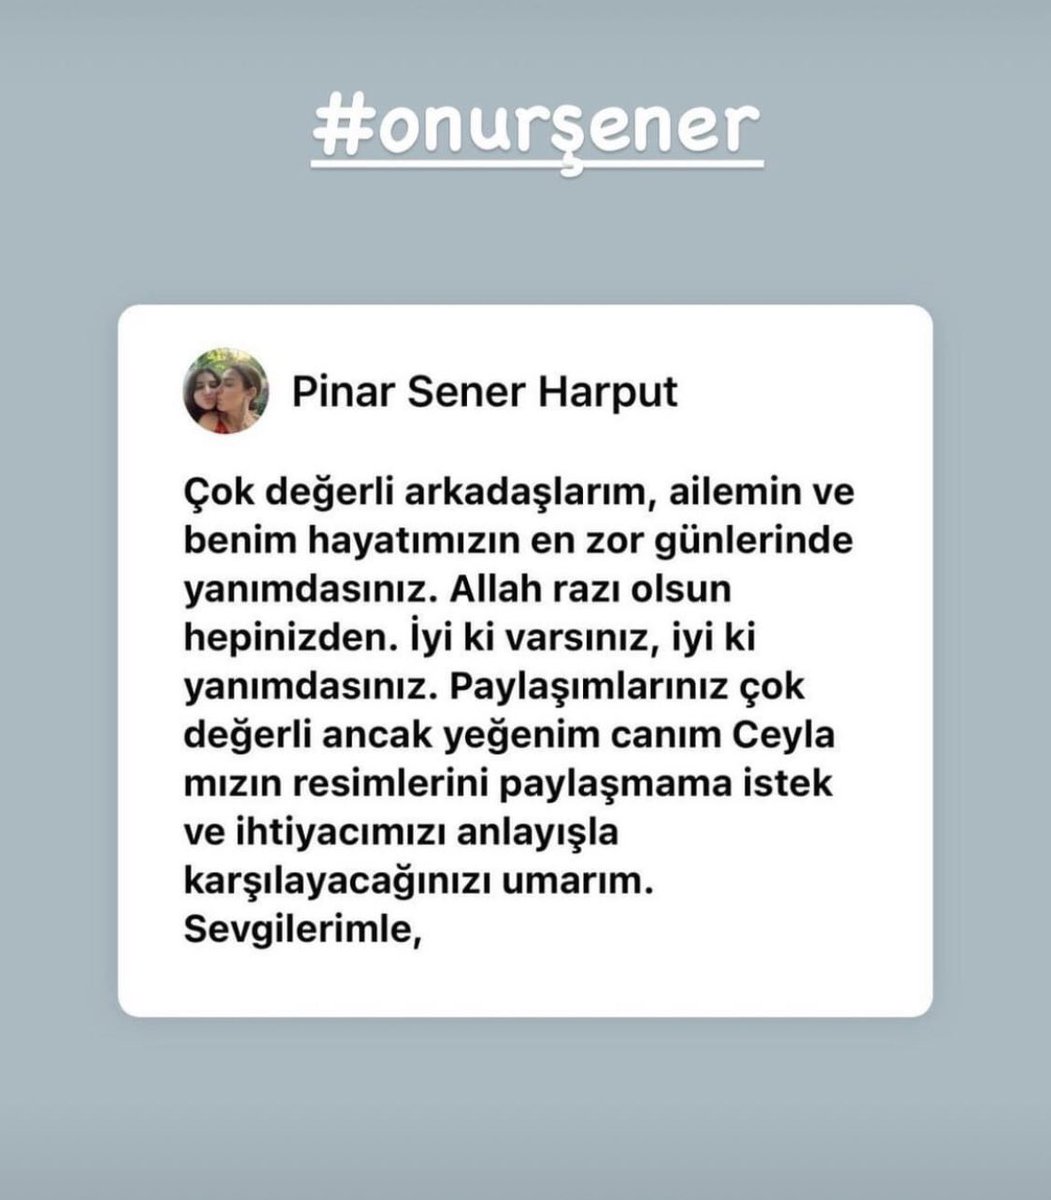 Onur Şener’in ablası, çocukluk arkadaşım Pınar kamuoyundan Onur’un kızı Ceyla’nın fotoğraflarını paylaşmamamızı rica ediyor. Ne olur ailenin bu ricasını paylaşarak duyuralım. #OnurSenerİcinAdalet